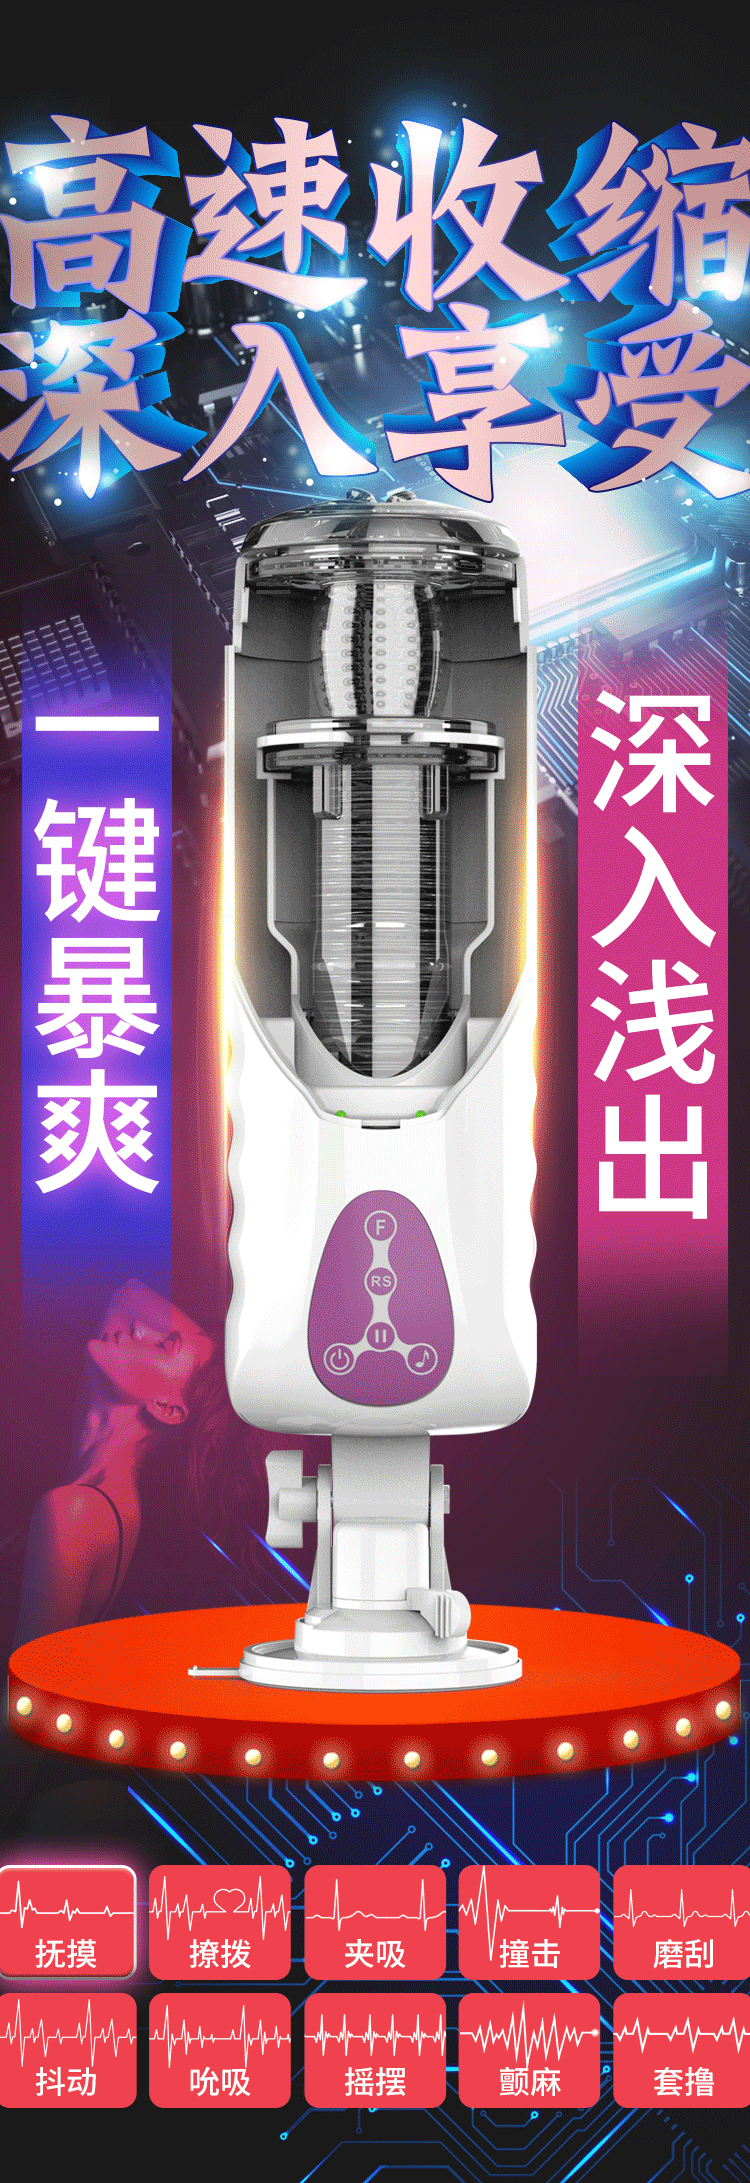 自动飞机杯男用自慰器加温电动活塞免提便携式吸吮男性炮击情趣性用品